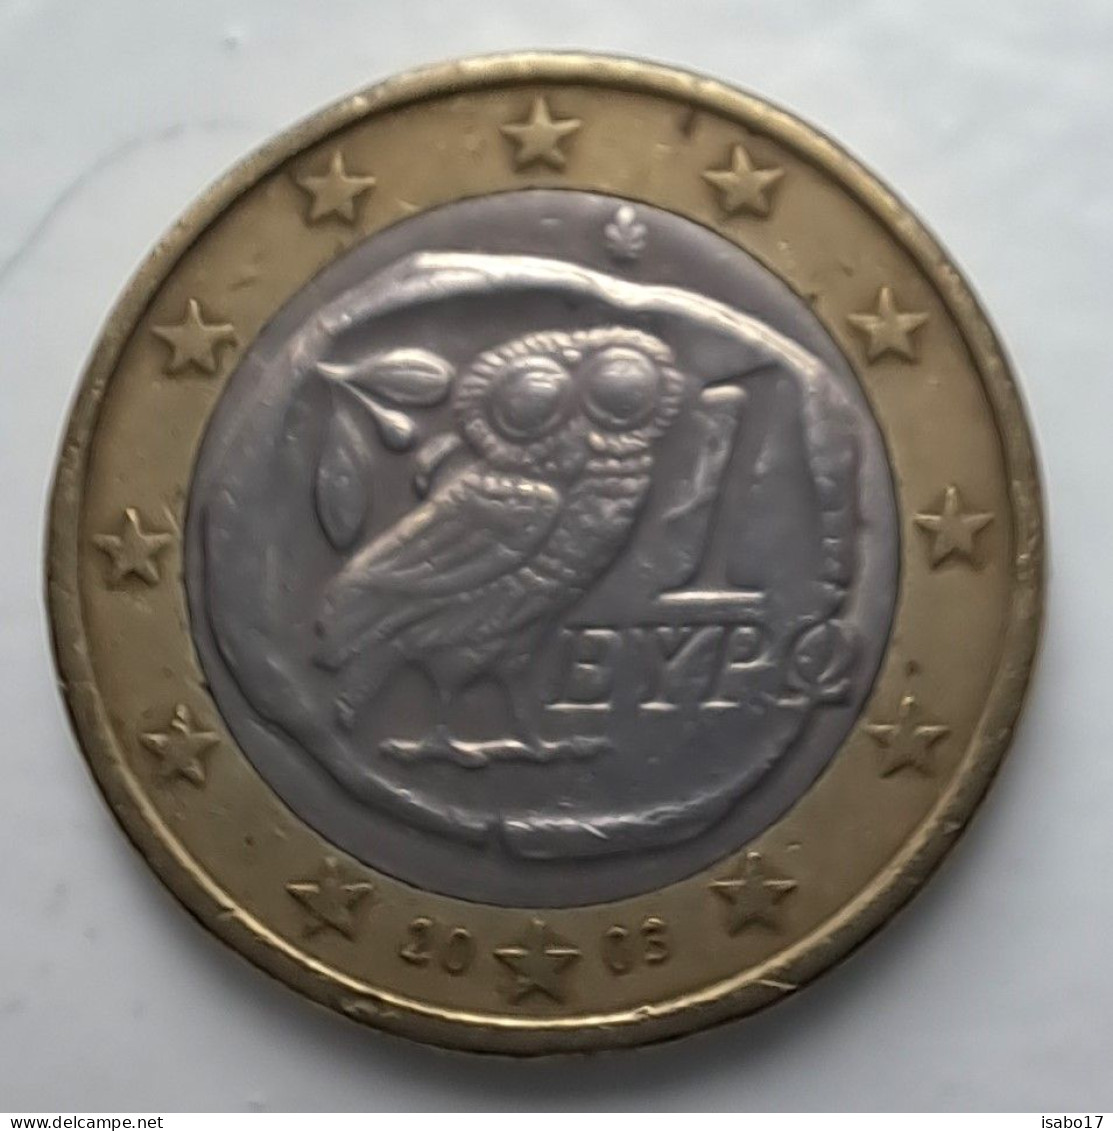 1 Euro GRIECHENLAND 2003 - Greece